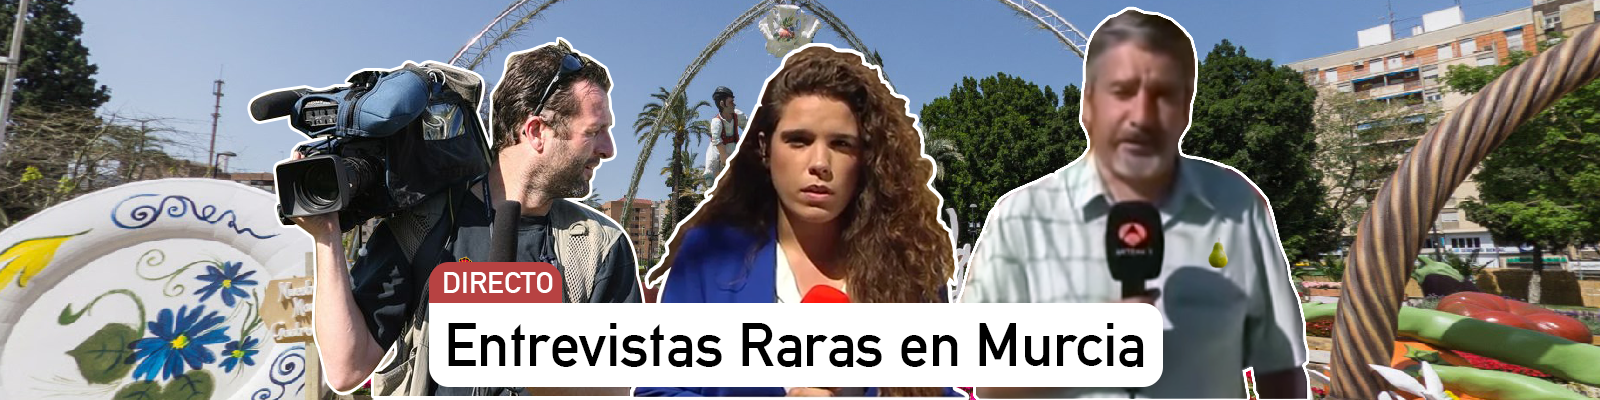 Día de entrevistas raras en Murcia